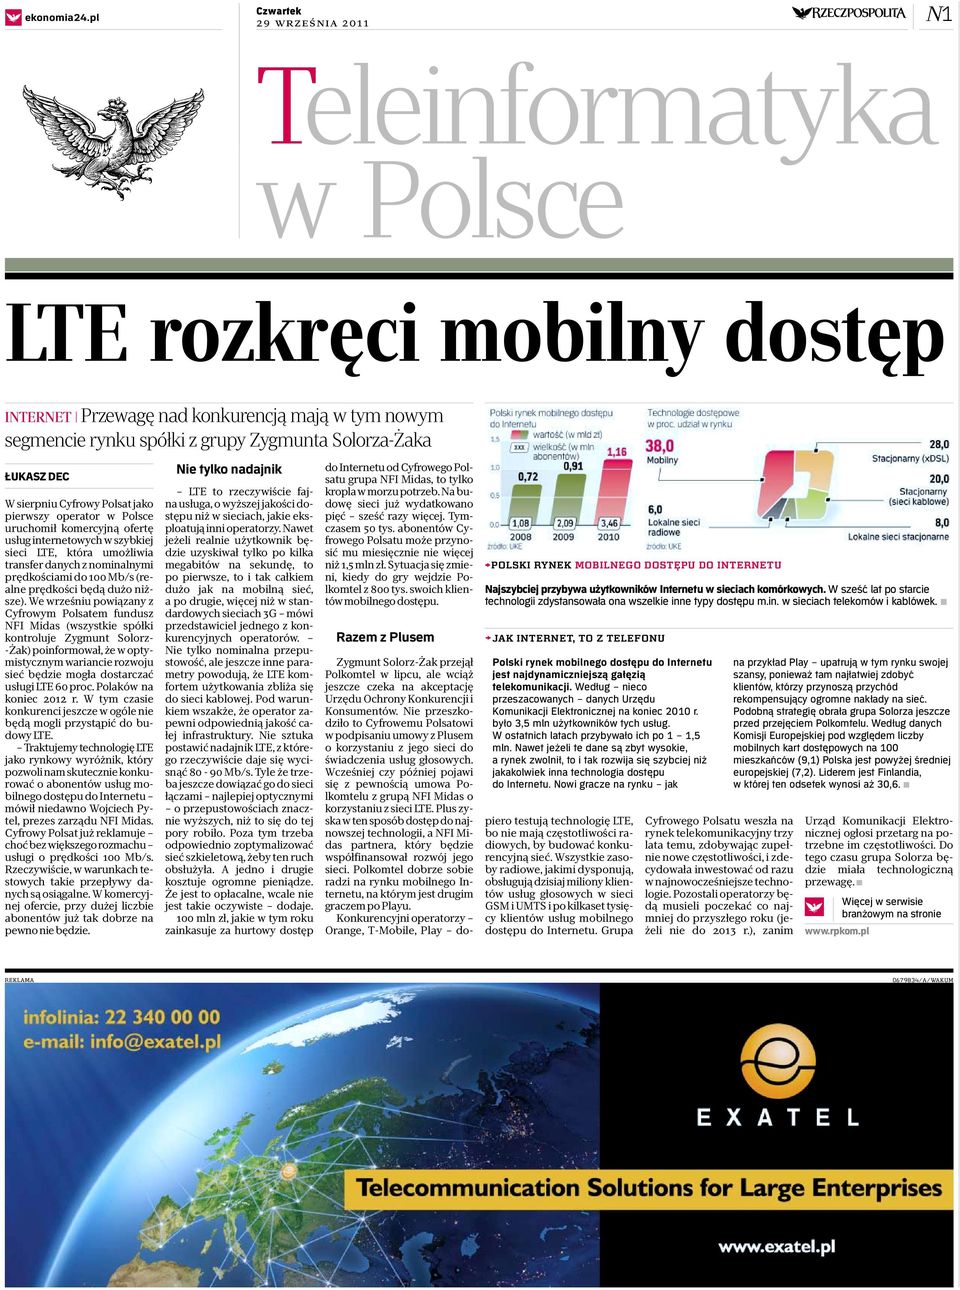 Cyfrowy Polsat jako pierwszy operator w Polsce uruchomił komercyjną ofertę usług internetowych w szybkiej sieci LTE, która umożliwia transfer danych z nominalnymi prędkościami do 100 Mb/s (realne